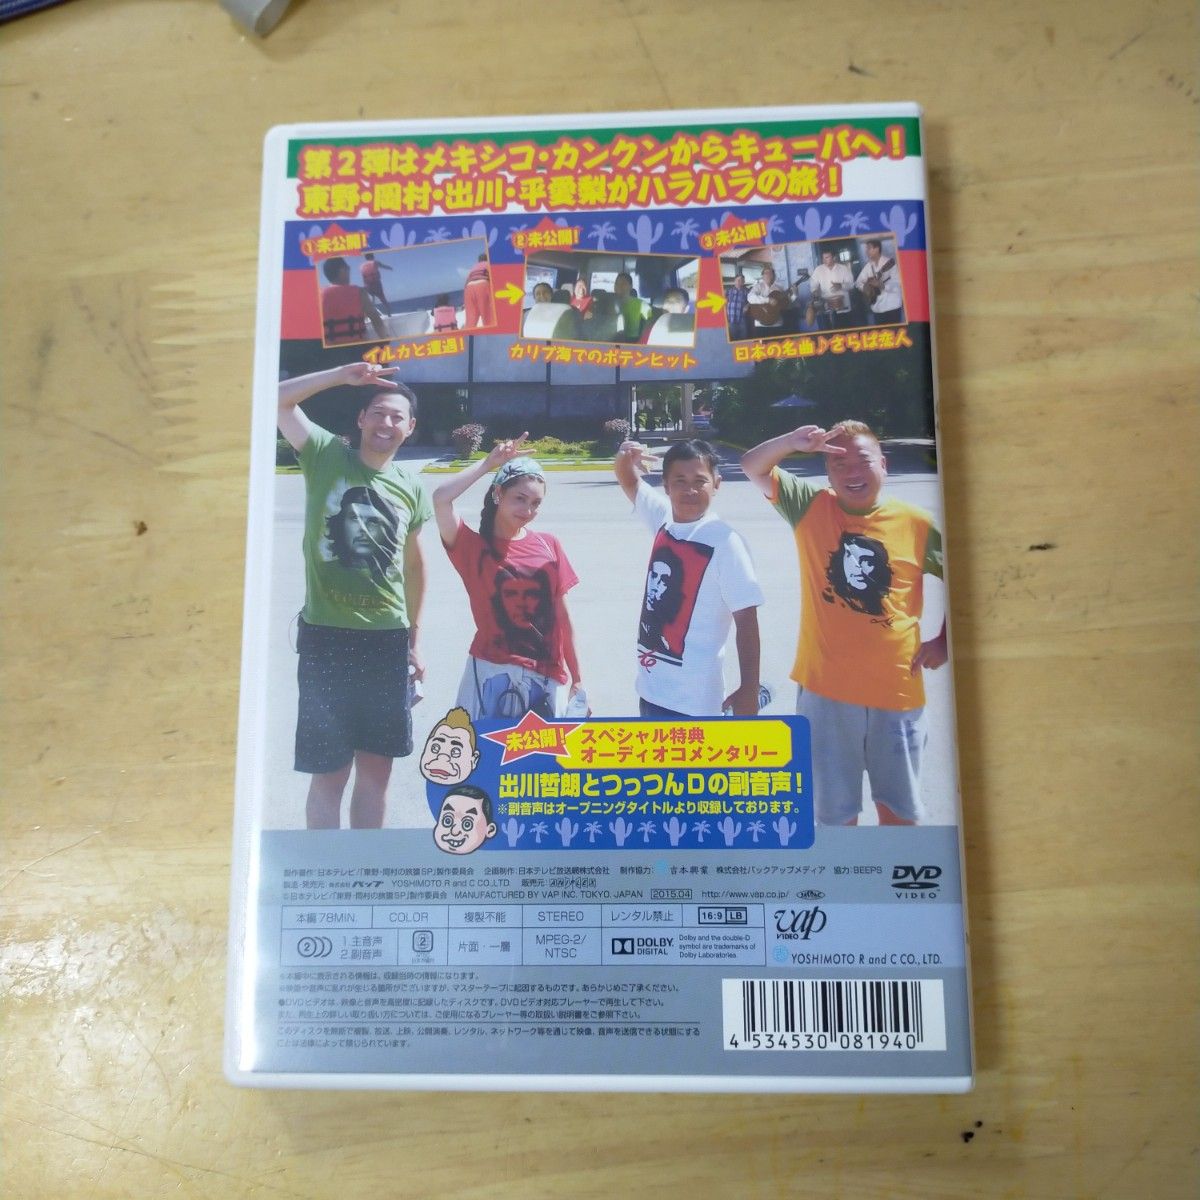 東野岡村の旅猿SP&6 プライベートでごめんなさいカリブ海の旅 (2) ハラハラ編 プレミアム完全版 DVD